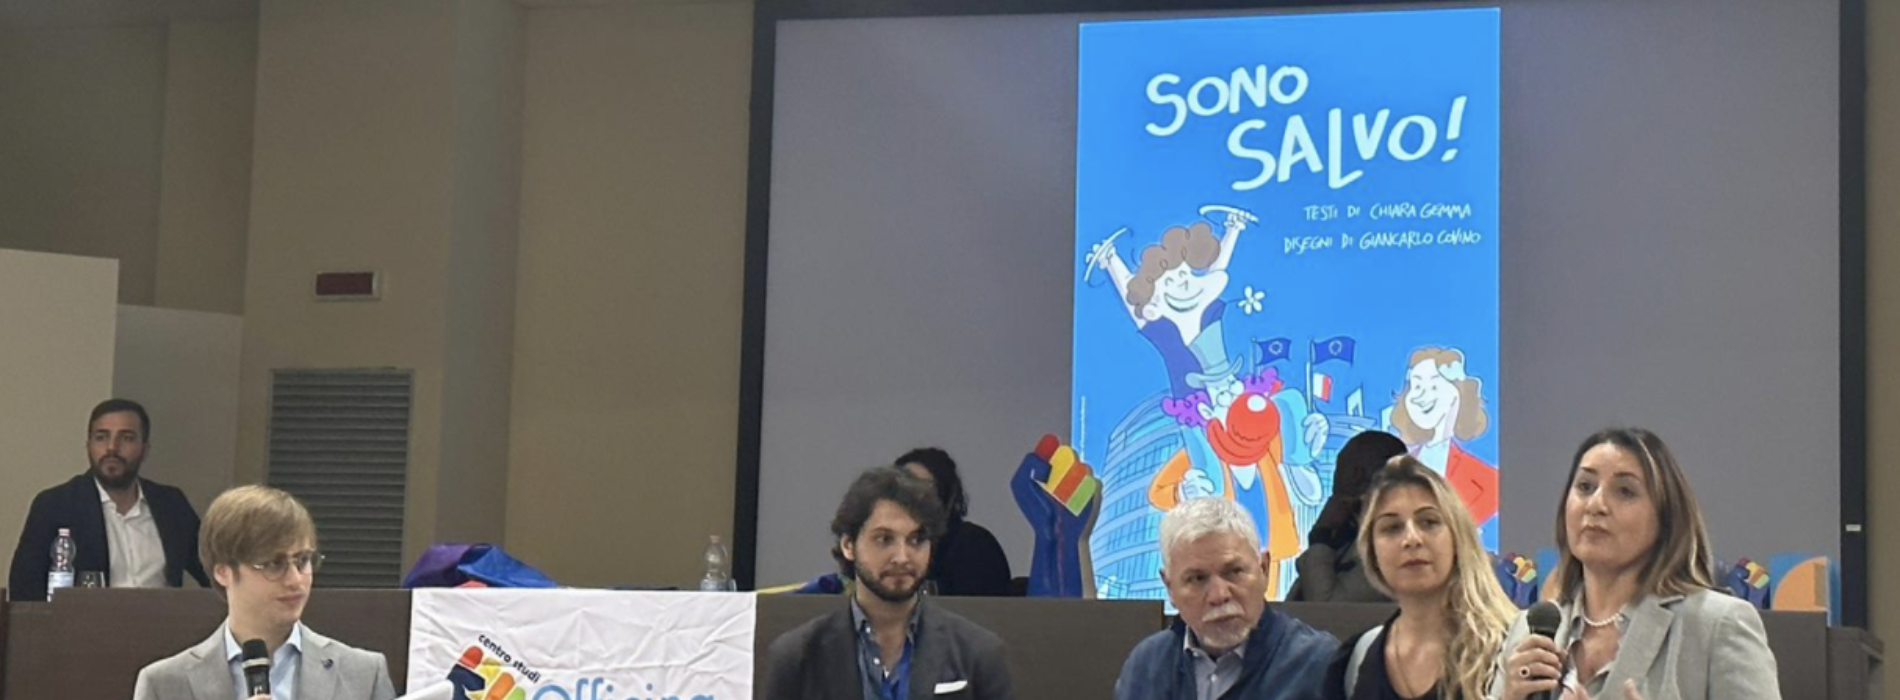 Dal fumetto all’inclusione, così “SonoSalvo” vola in Europa